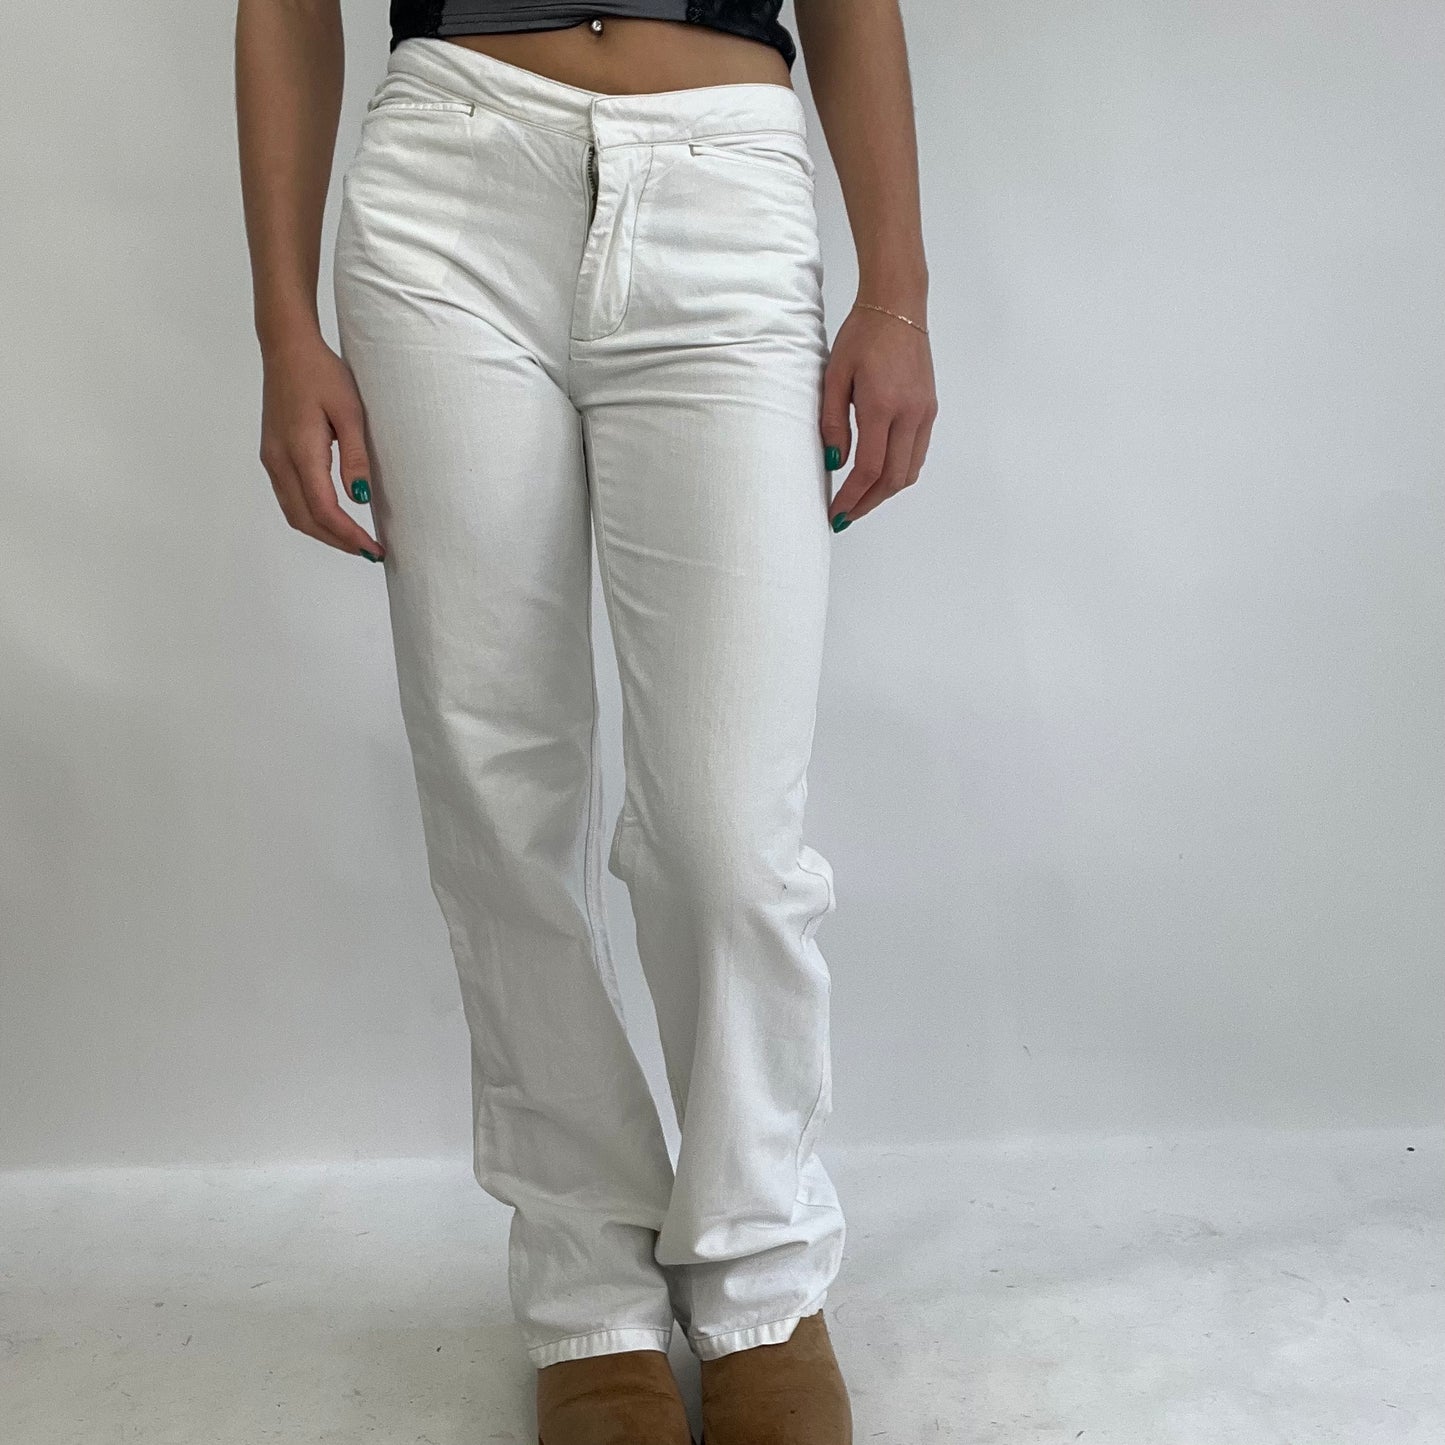 💻INSTA BADDIE DROP | XS white calvin klein jeans